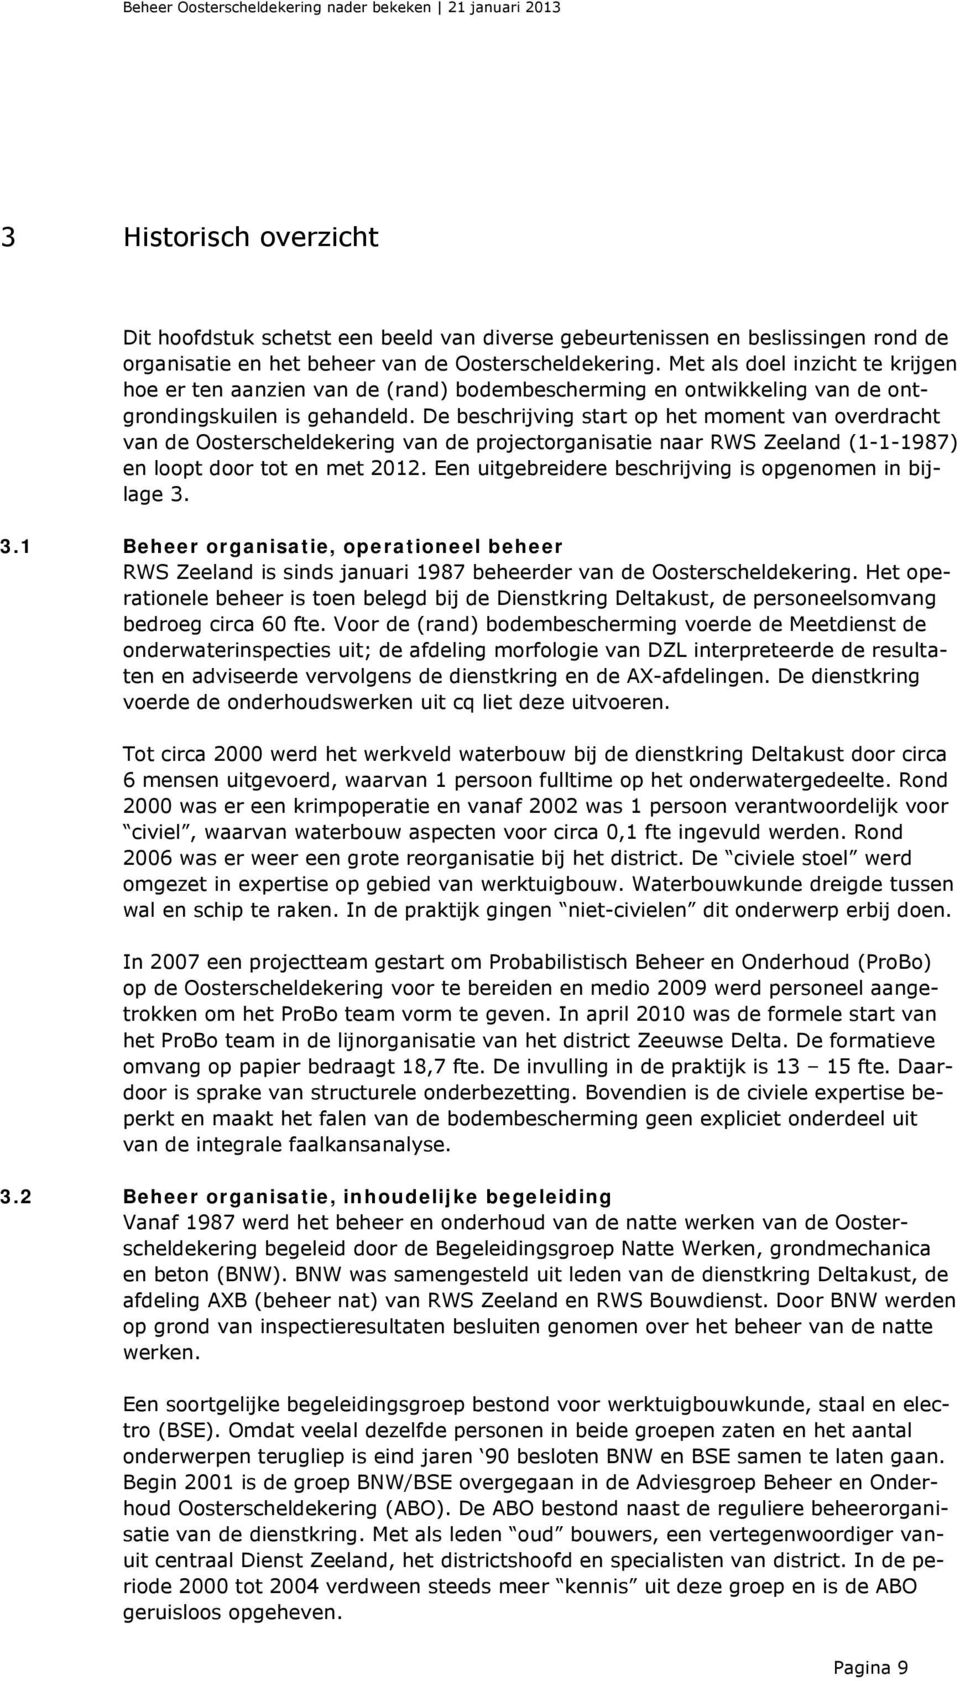 De beschrijving start op het moment van overdracht van de Oosterscheldekering van de projectorganisatie naar RWS Zeeland (1-1-1987) en loopt door tot en met 2012.